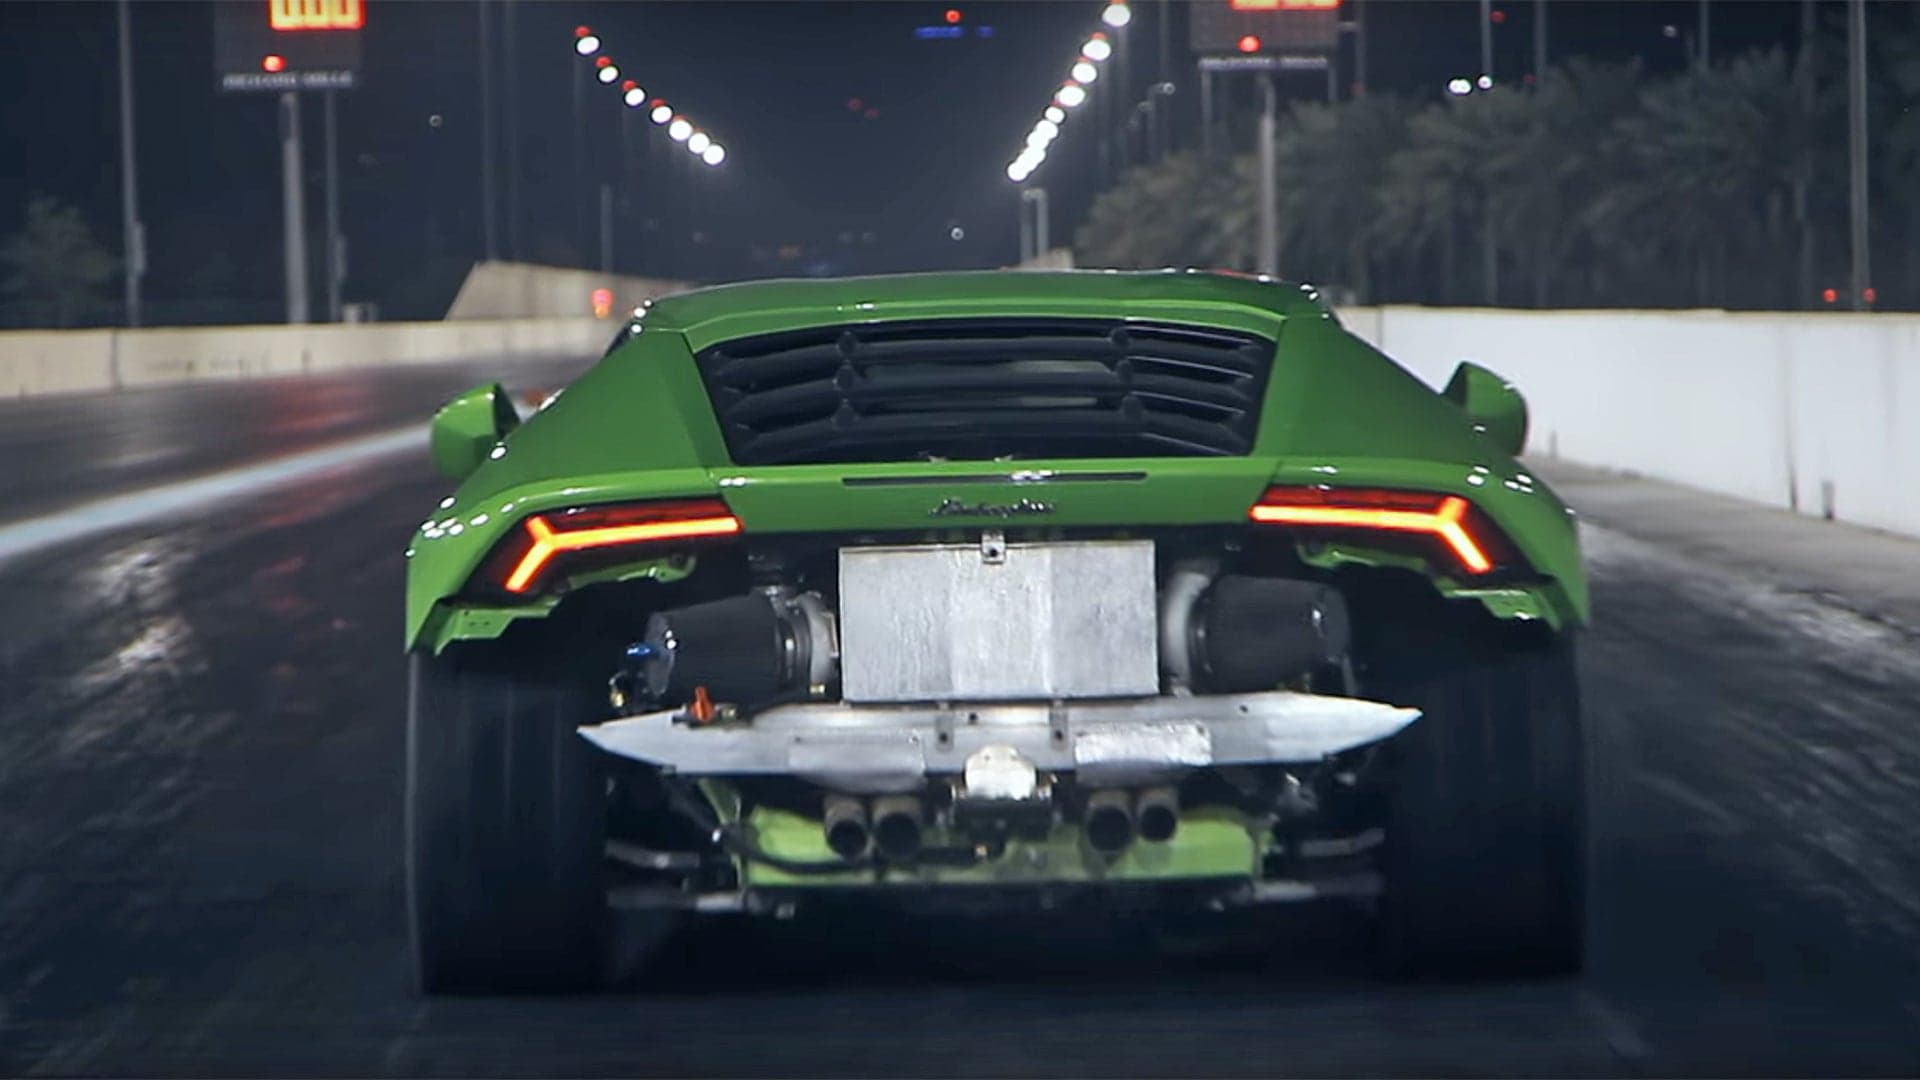 Watch a 1,400-HP Lamborghini Huracan Crush the Quarter Mile in 8.37 Seconds